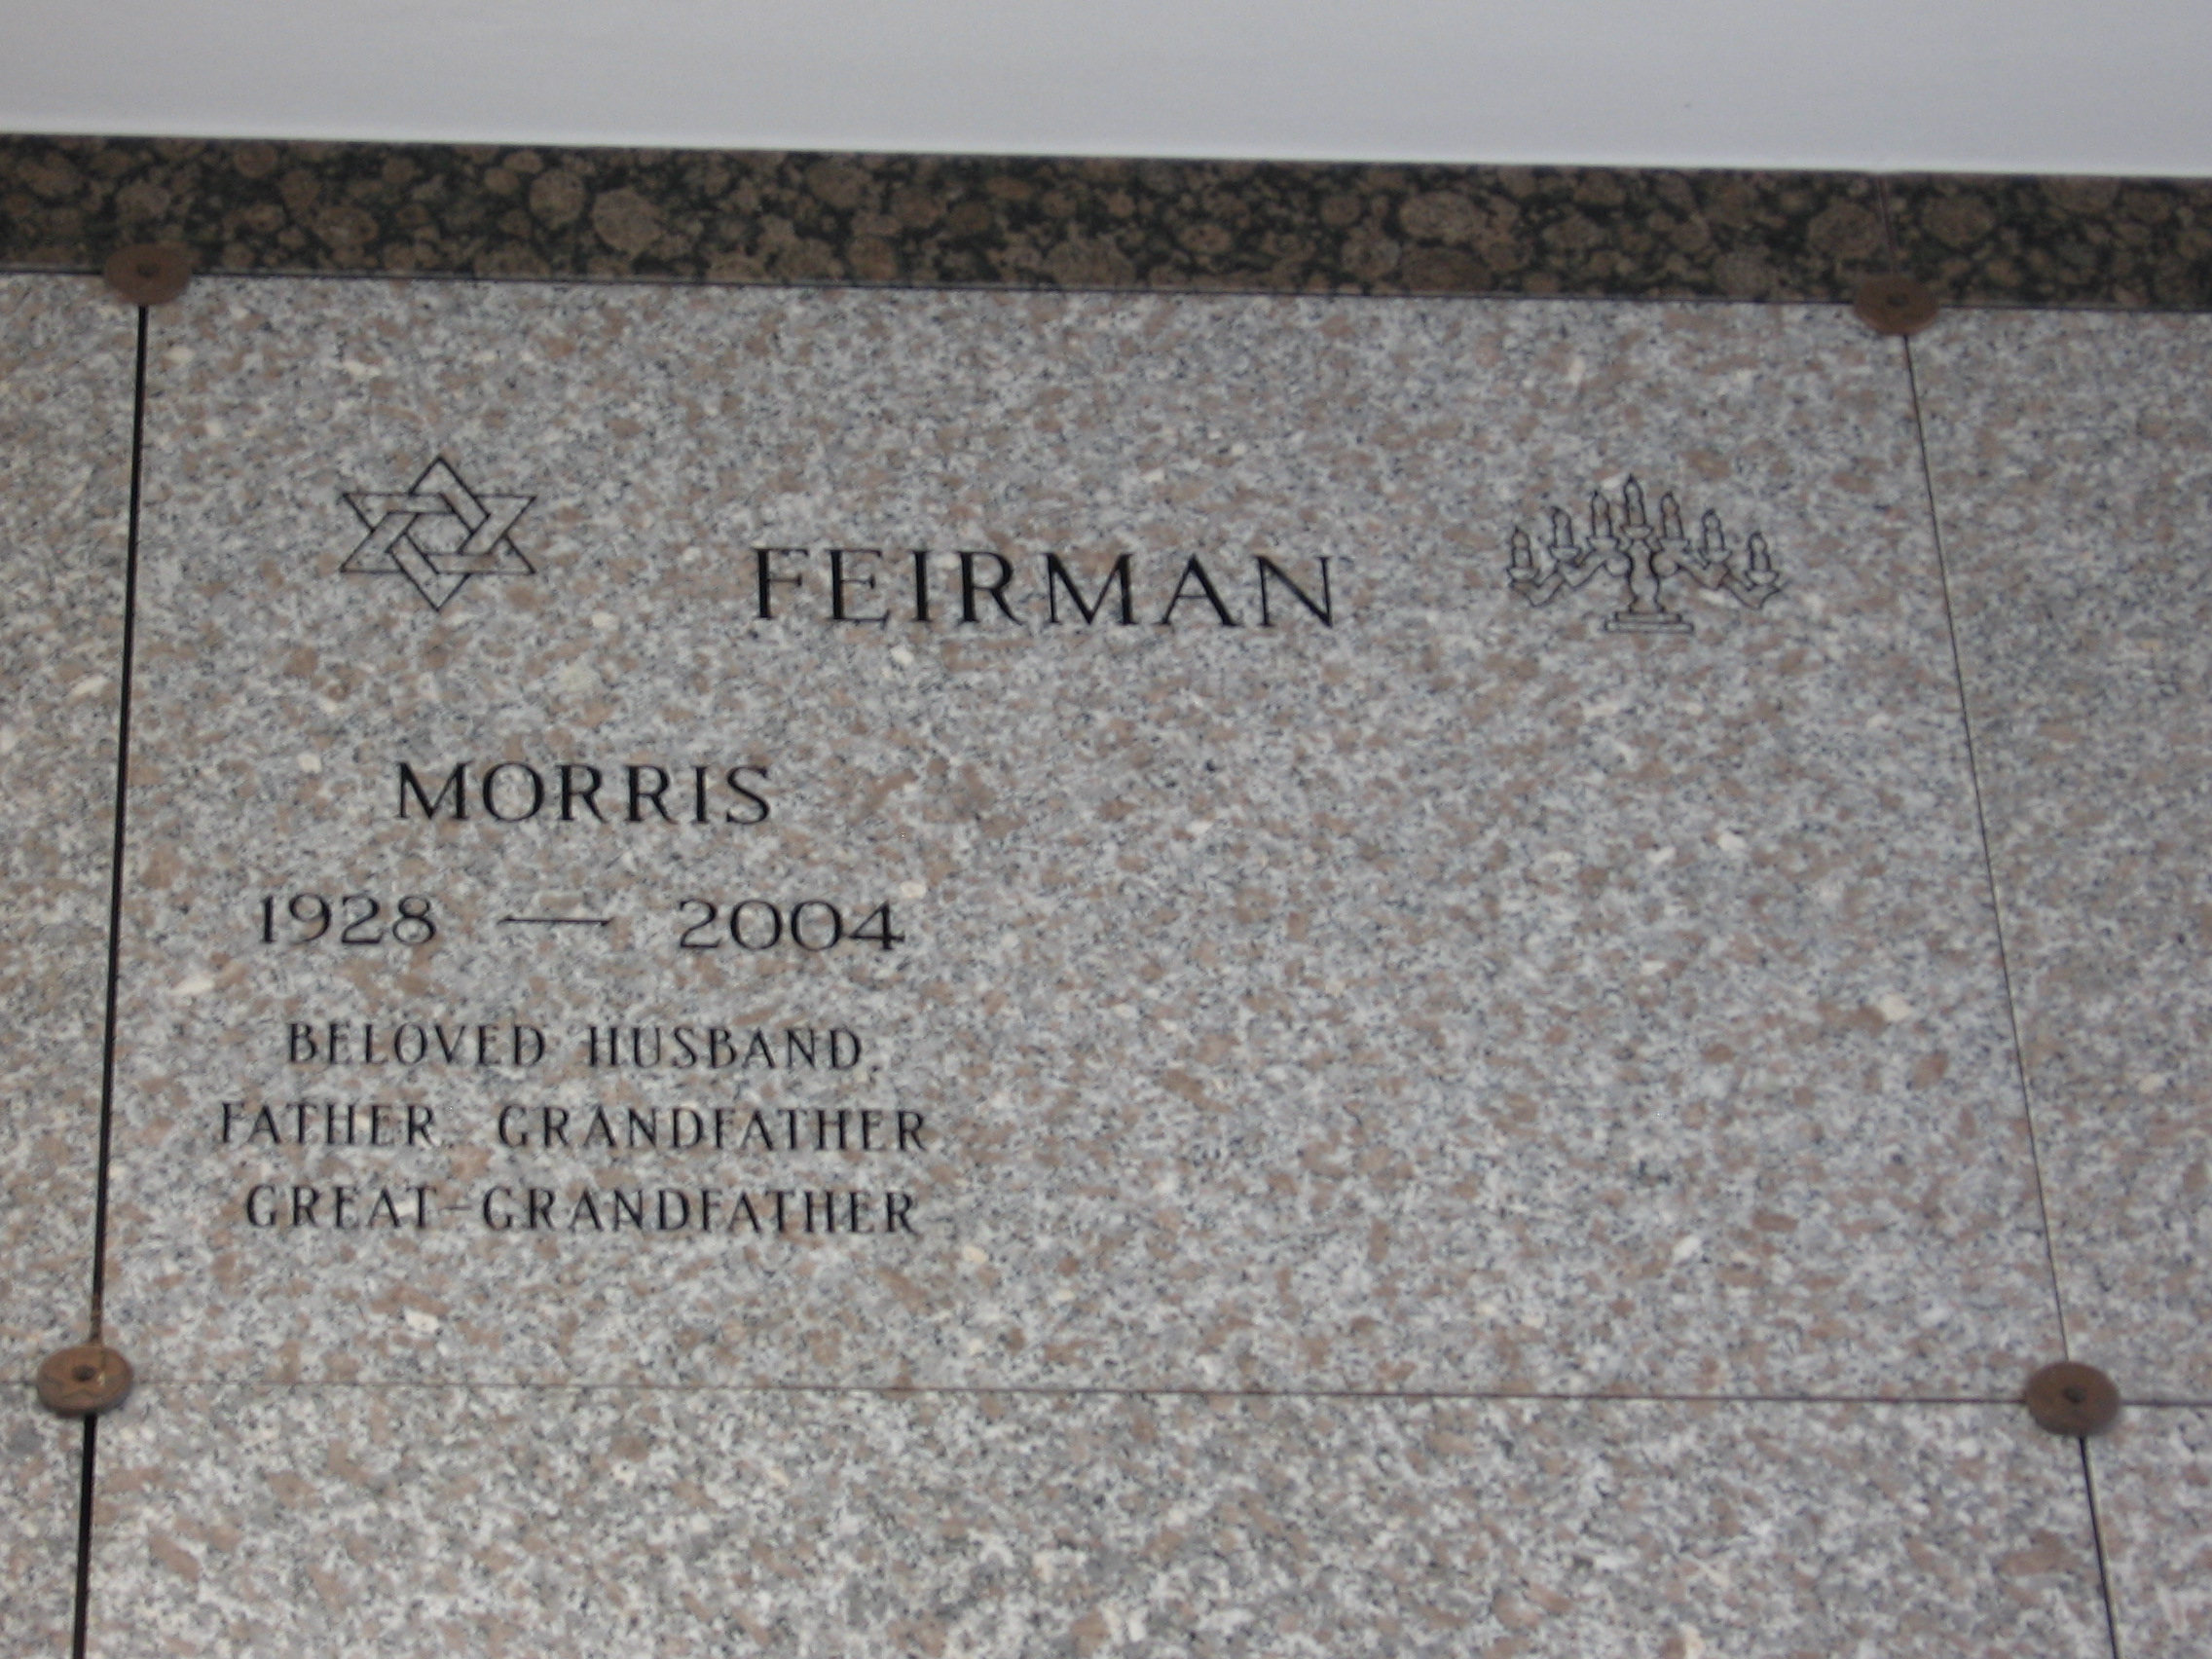 Morris Feirman